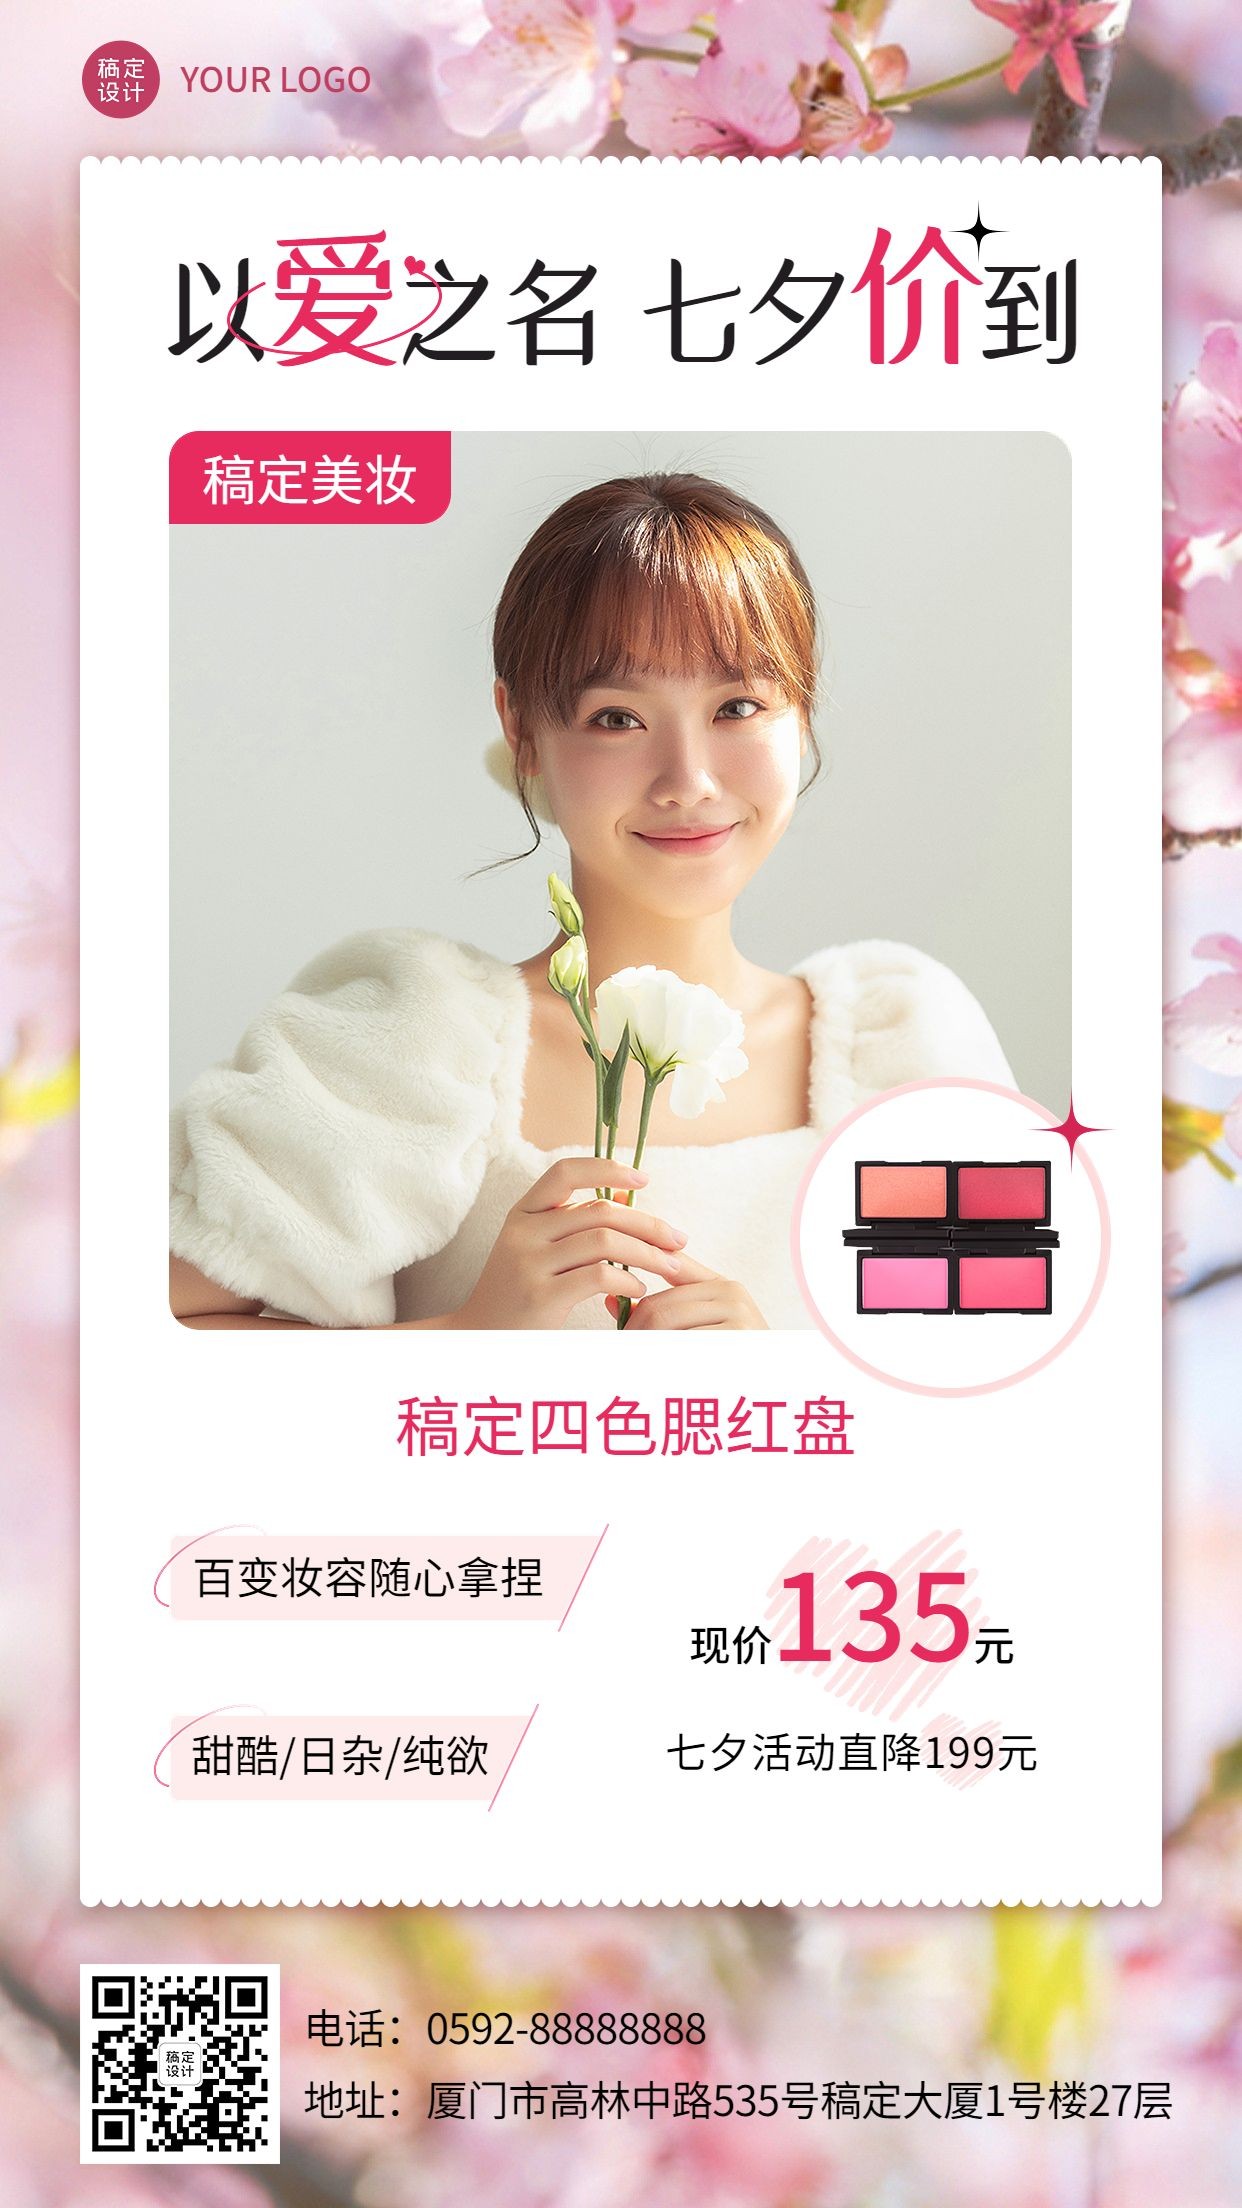 七夕情人节美容美妆产品营销手机海报预览效果